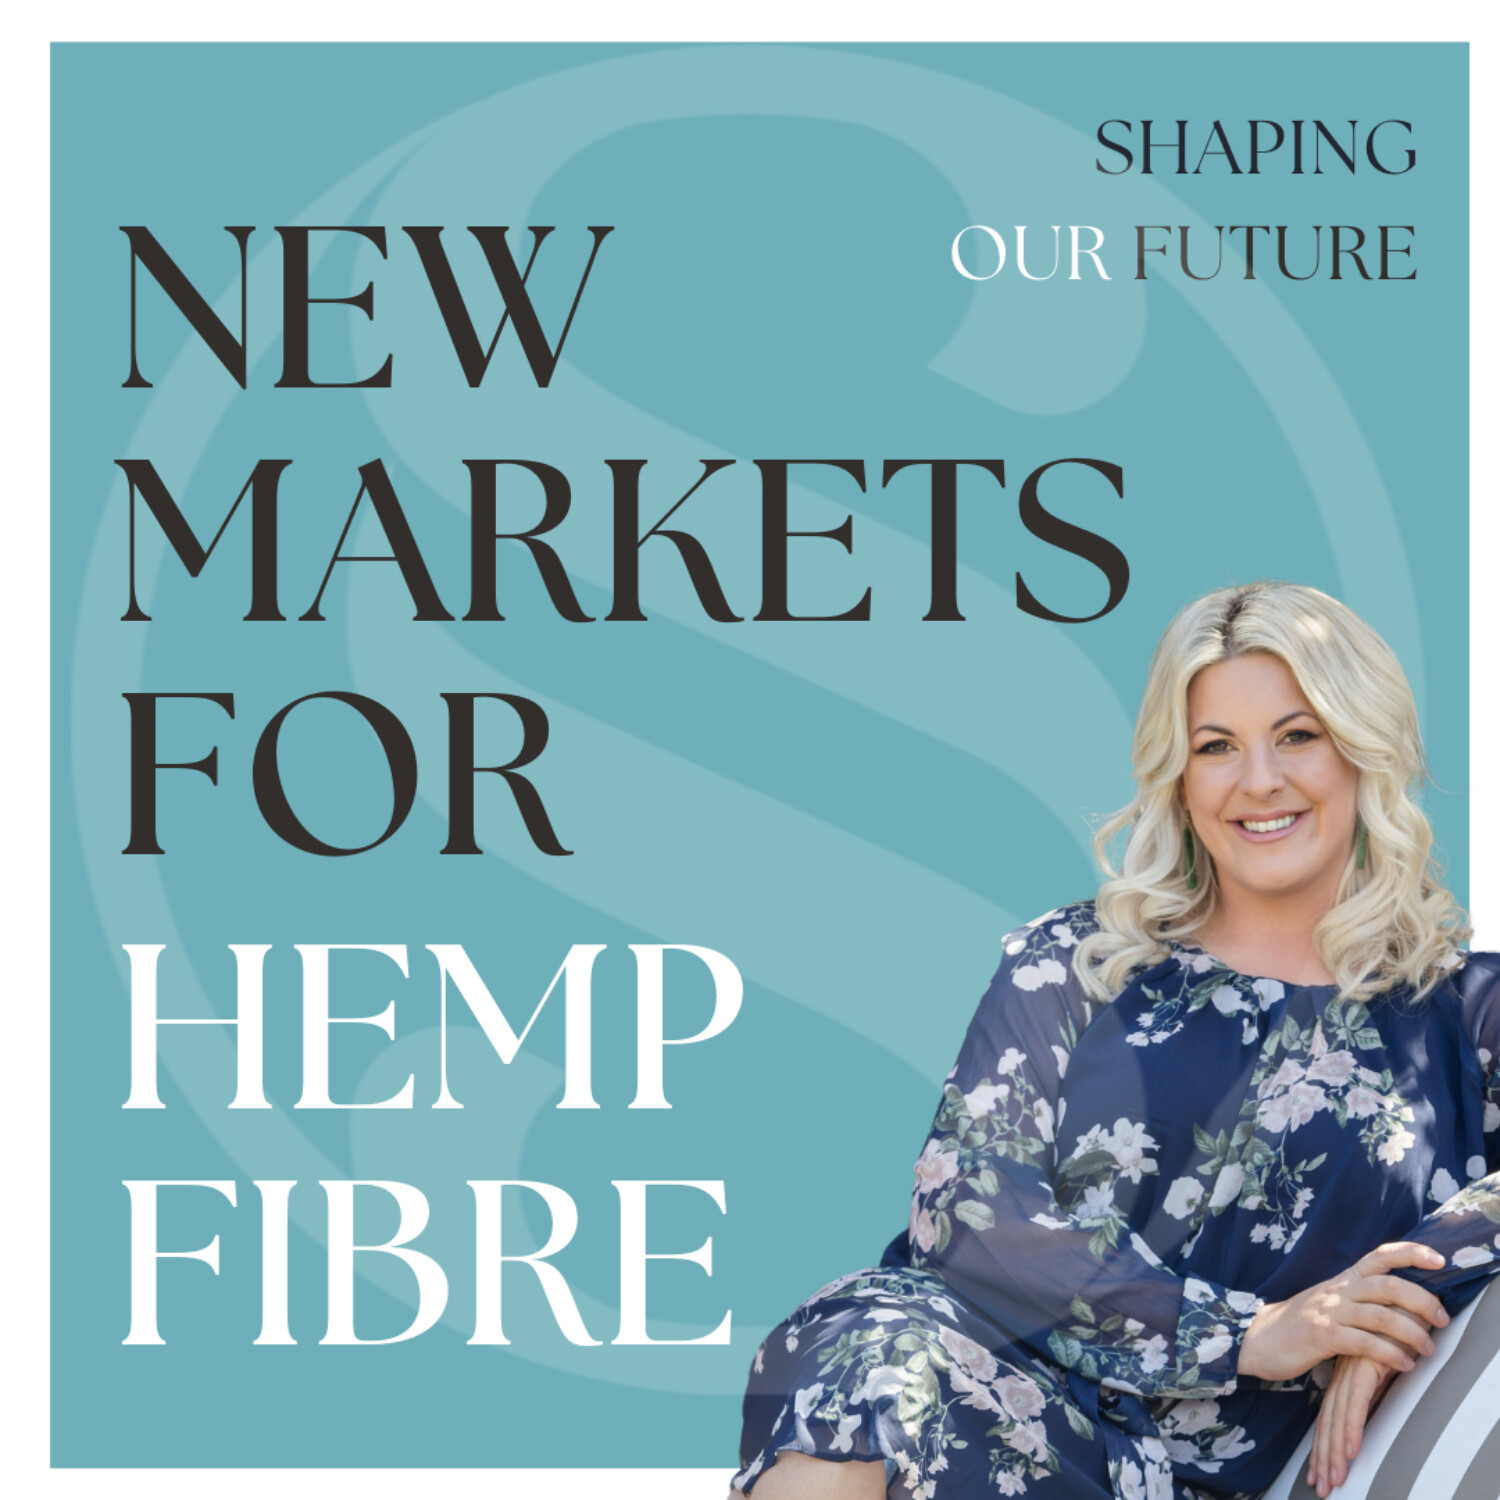 High-tech markets for hemp with NZ Natural Fibres & Carrfields